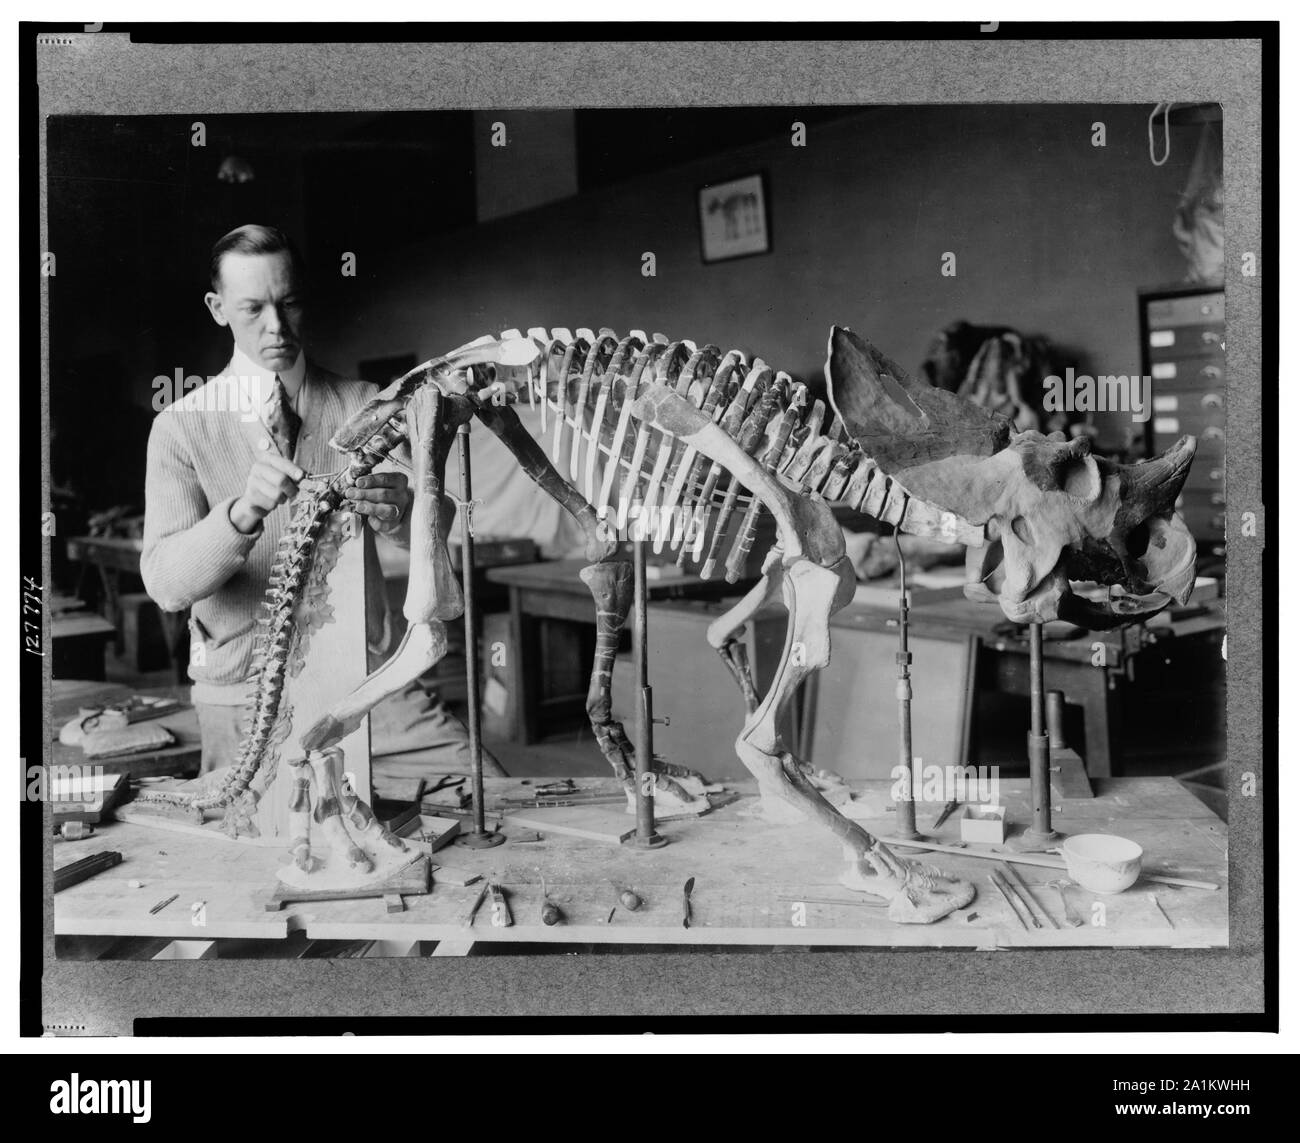 Norman Ross de la División de Paleontología, Museo Nacional, preparando el esqueleto de un dinosaurio bebé unos siete u ocho millones de años de exposición Foto de stock